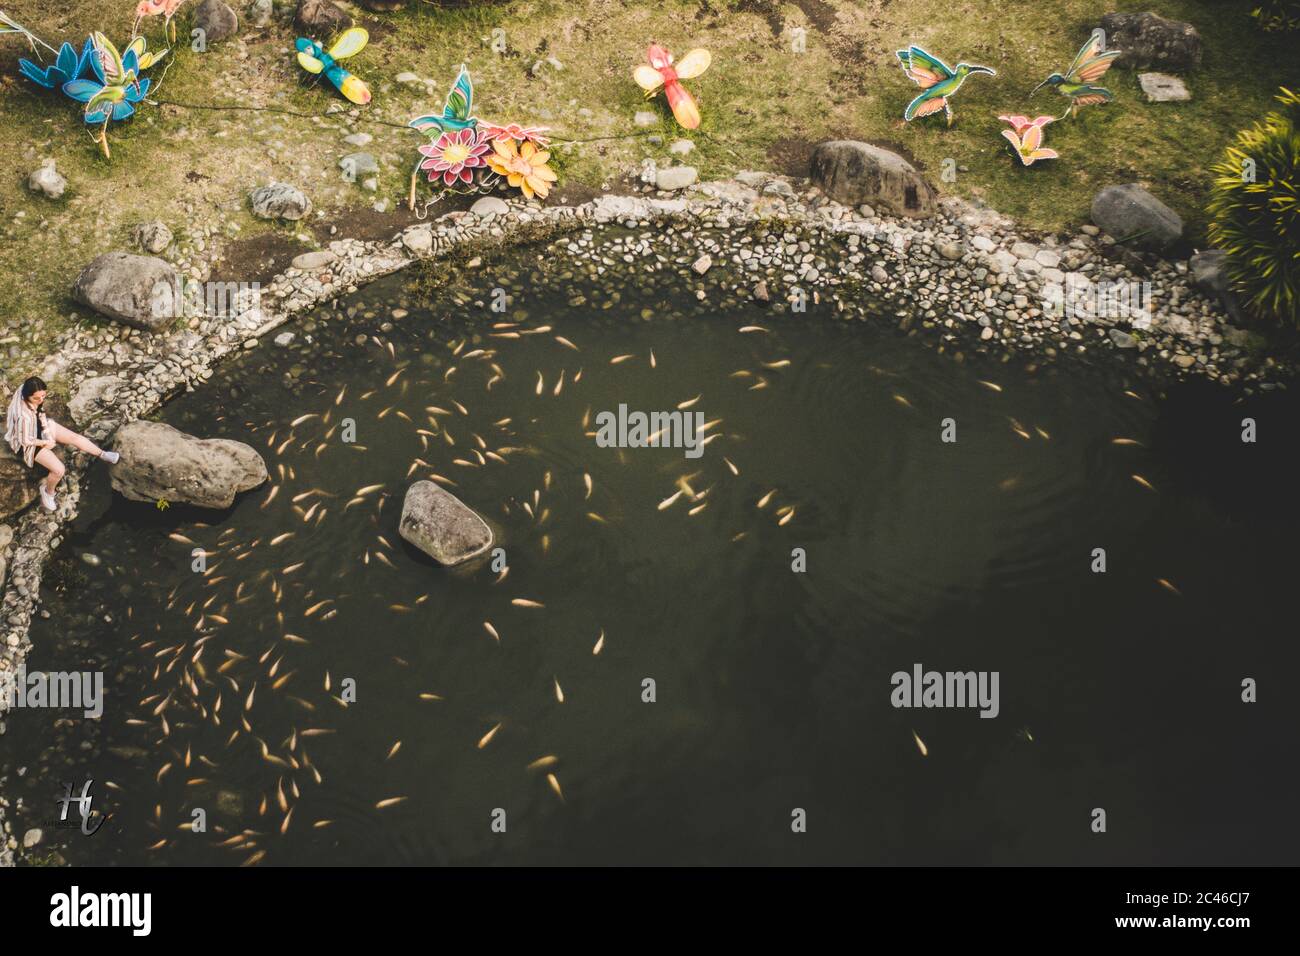 BOGOTA, COLOMBIA - May 12, 2018: Fotografía de estanque en plano cenital Stock Photo